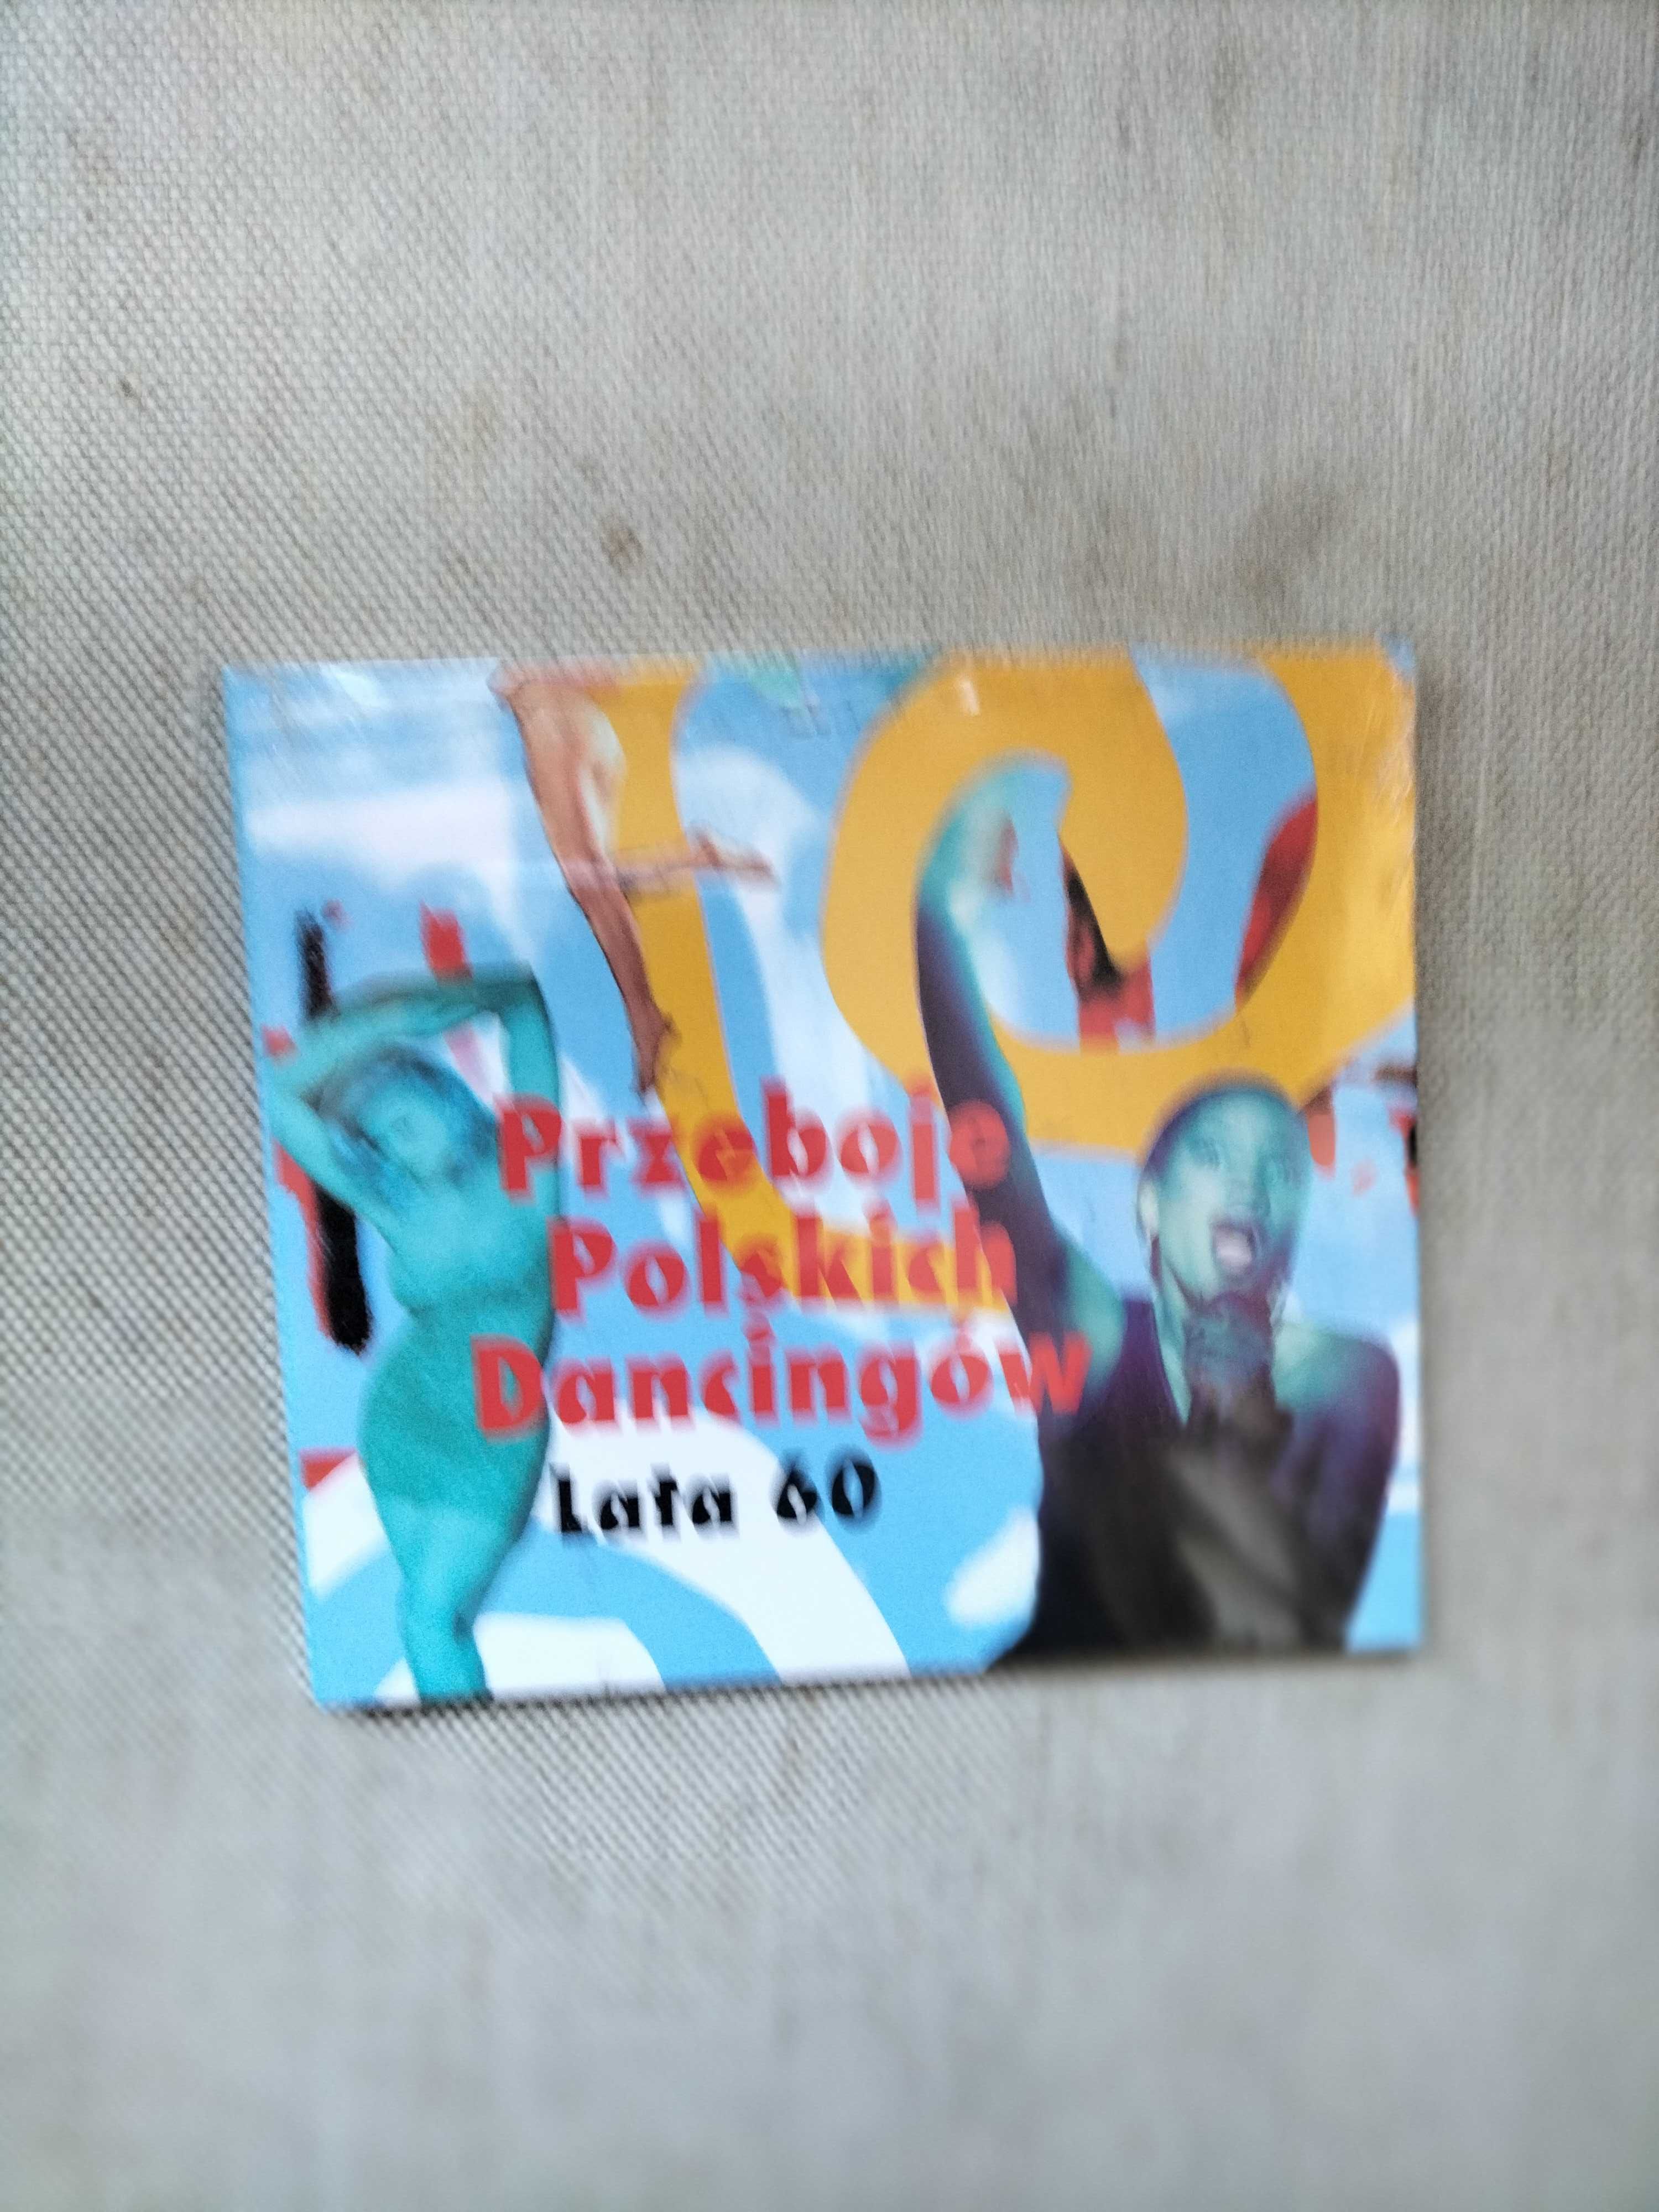 Nowe CD  " Przeboje Polskich Dancingów - LATA 60 "